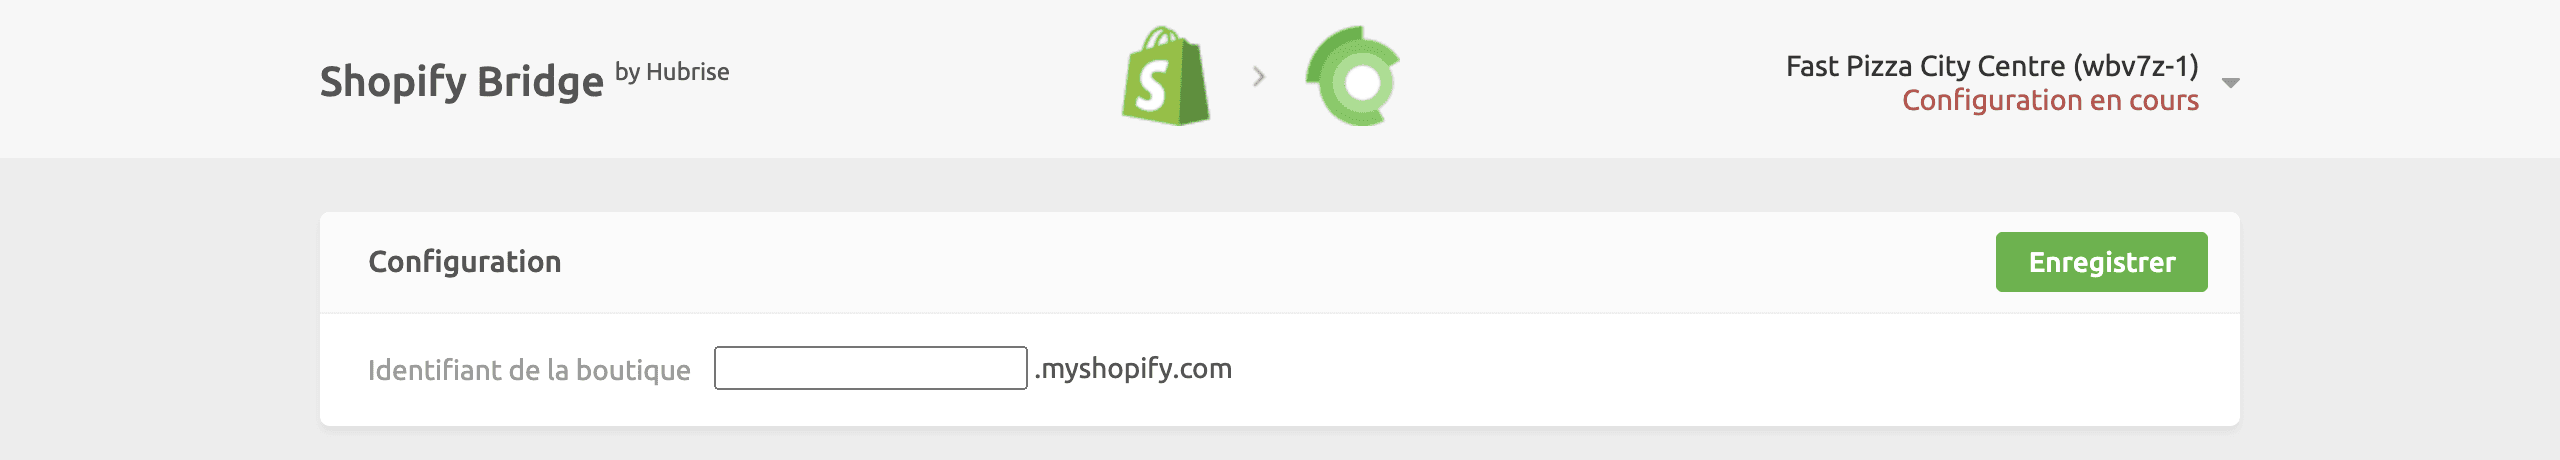 ID de la boutique Shopify